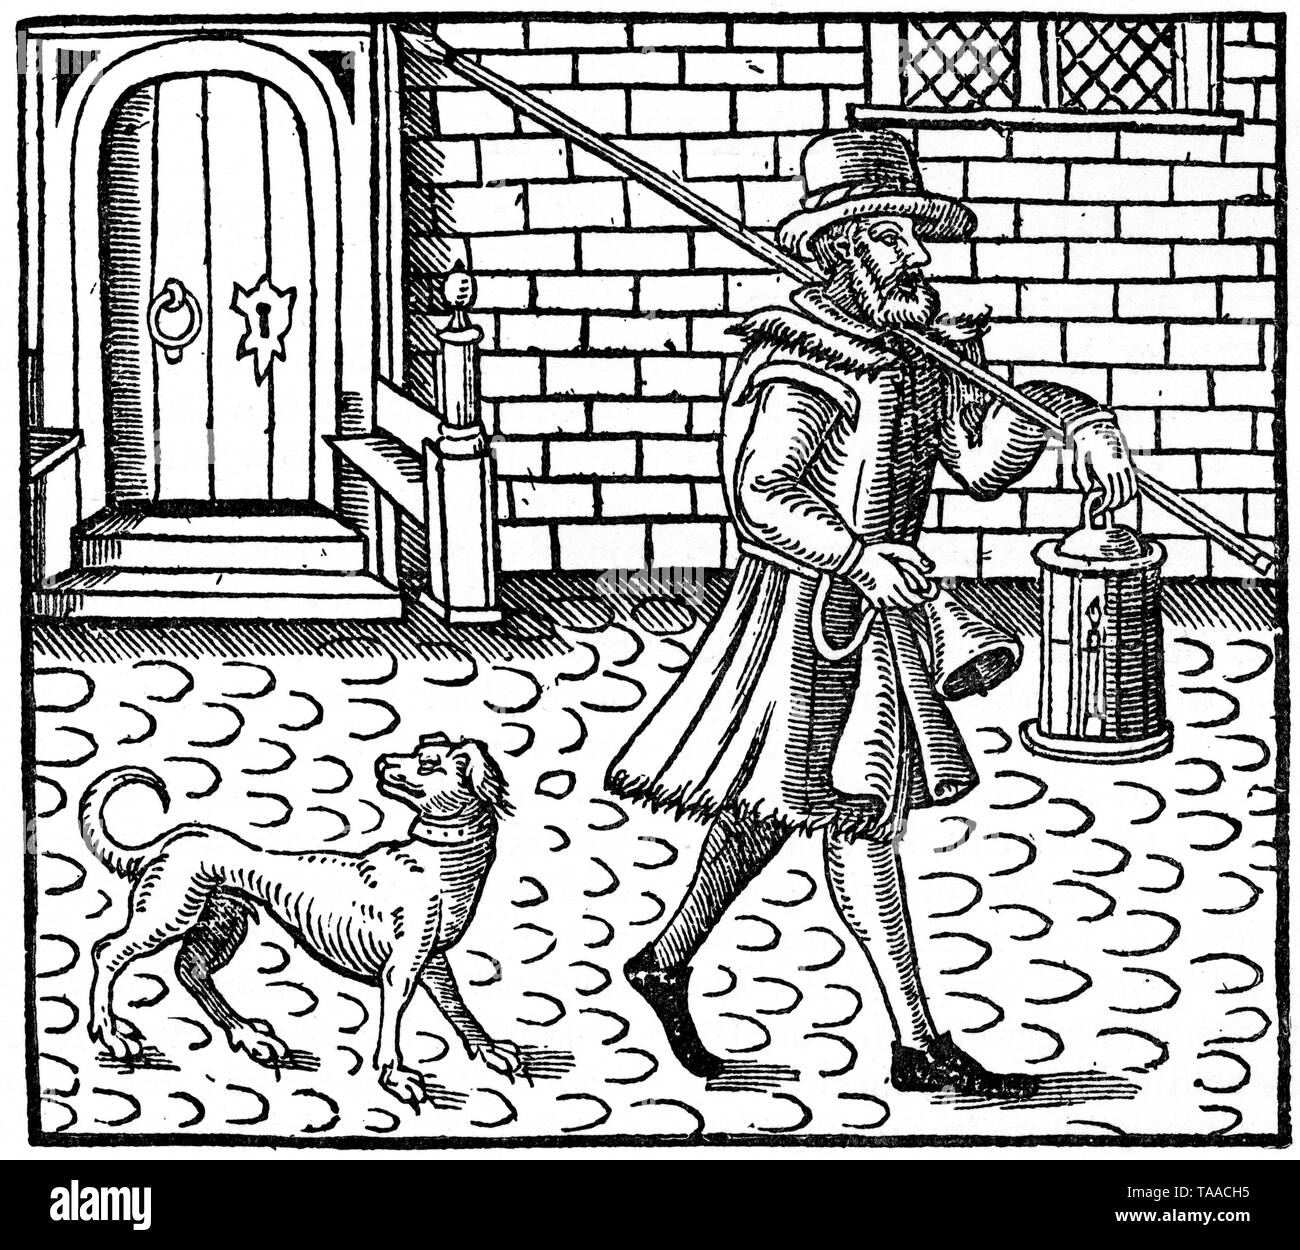 Fattorino londinese dei primi anni del XVII secolo. Di Thomas Dekker (1572-1632). Frontespizio da 'The Bellman of London', di Thomas Dekker (1572-1632), 1616. Stampato da Nathaniel burro, 1608. Foto Stock